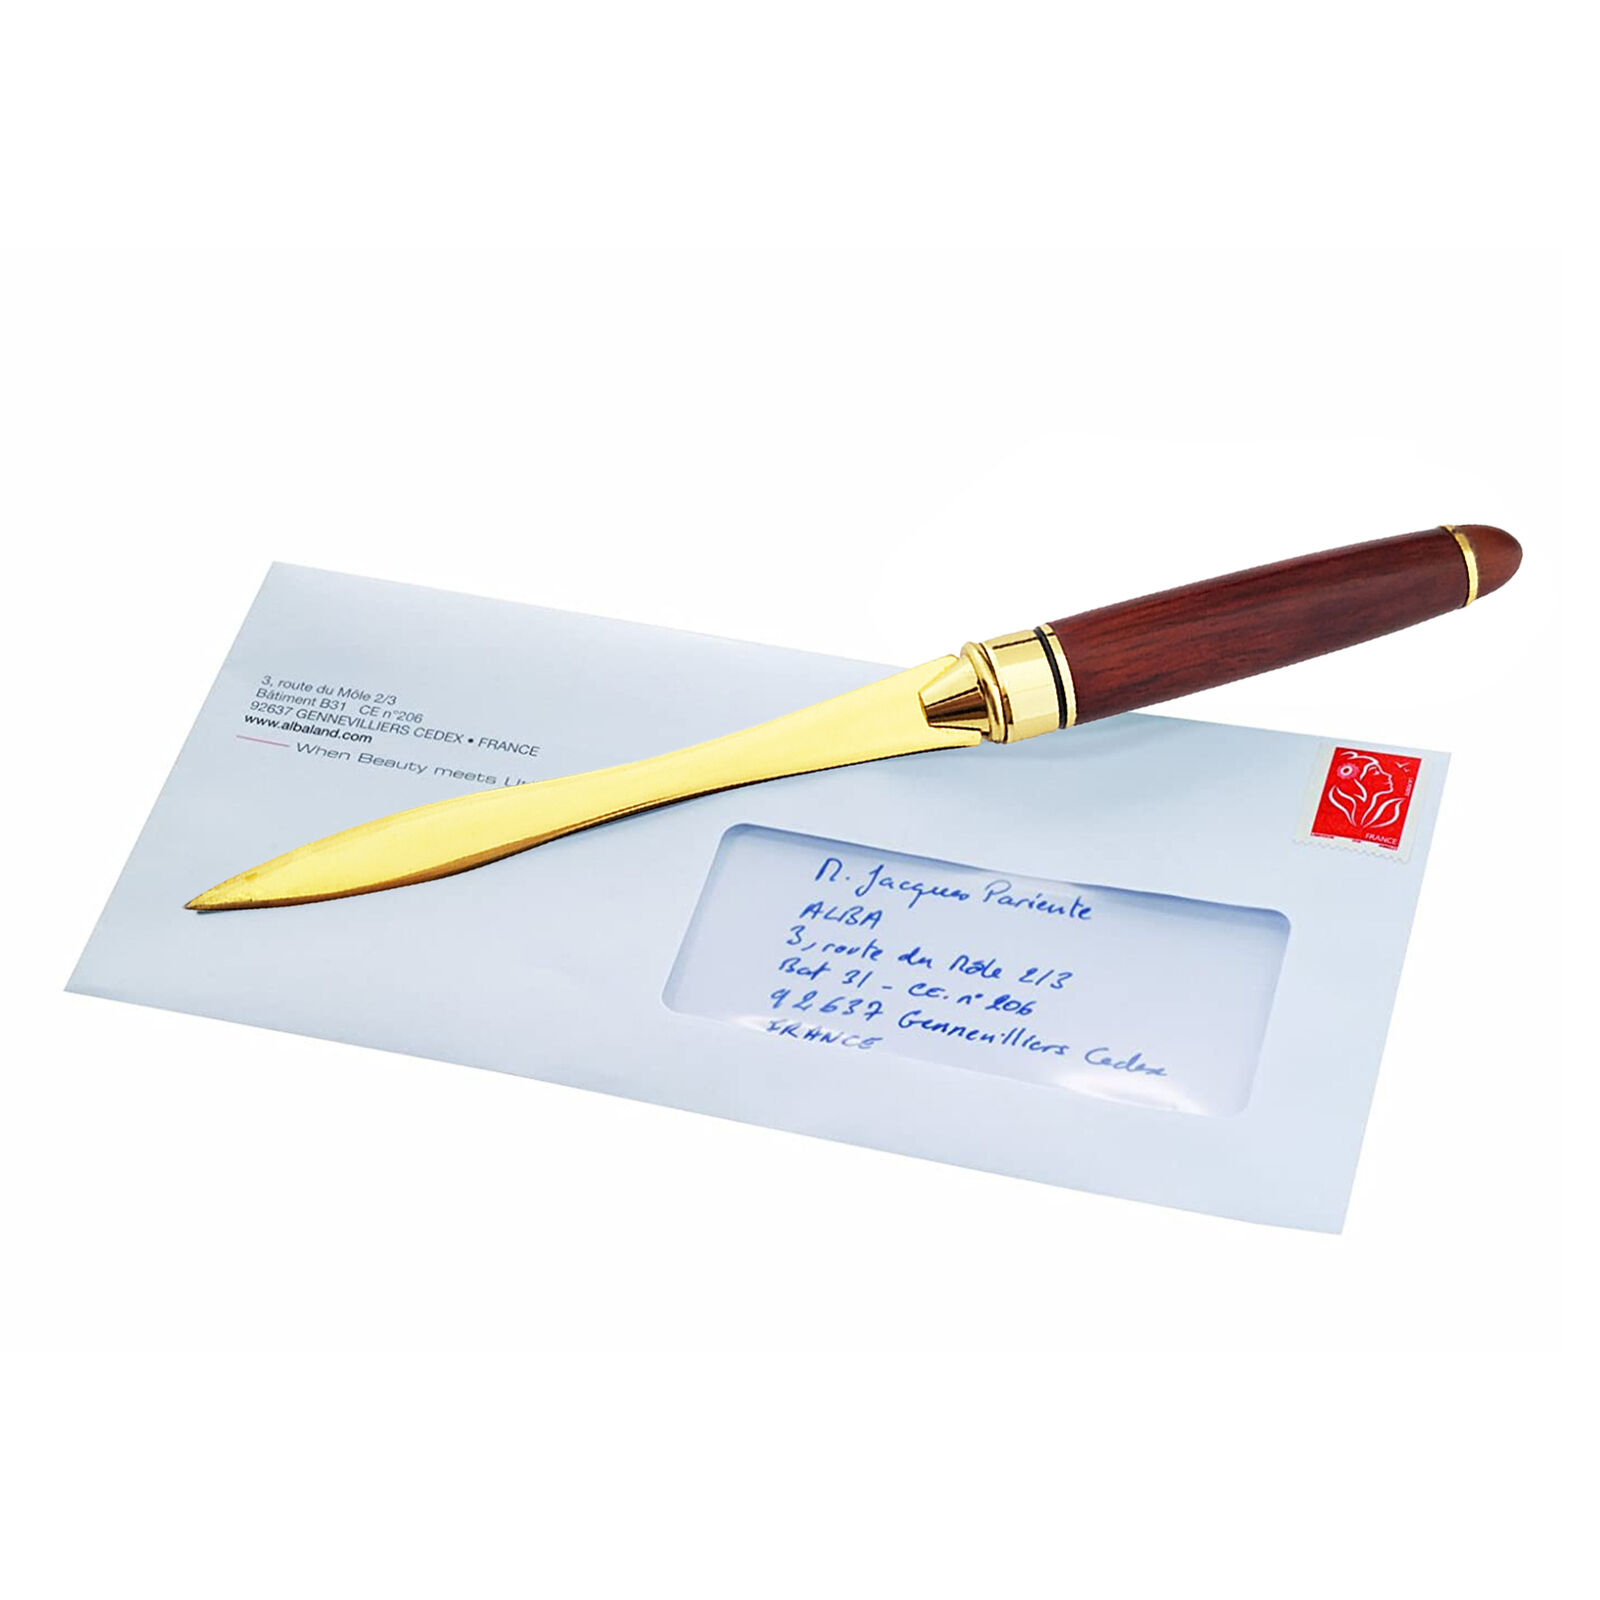 Wood Handle Letter Opener Stainless Steel Envelope Slitter Cut Paper Knives